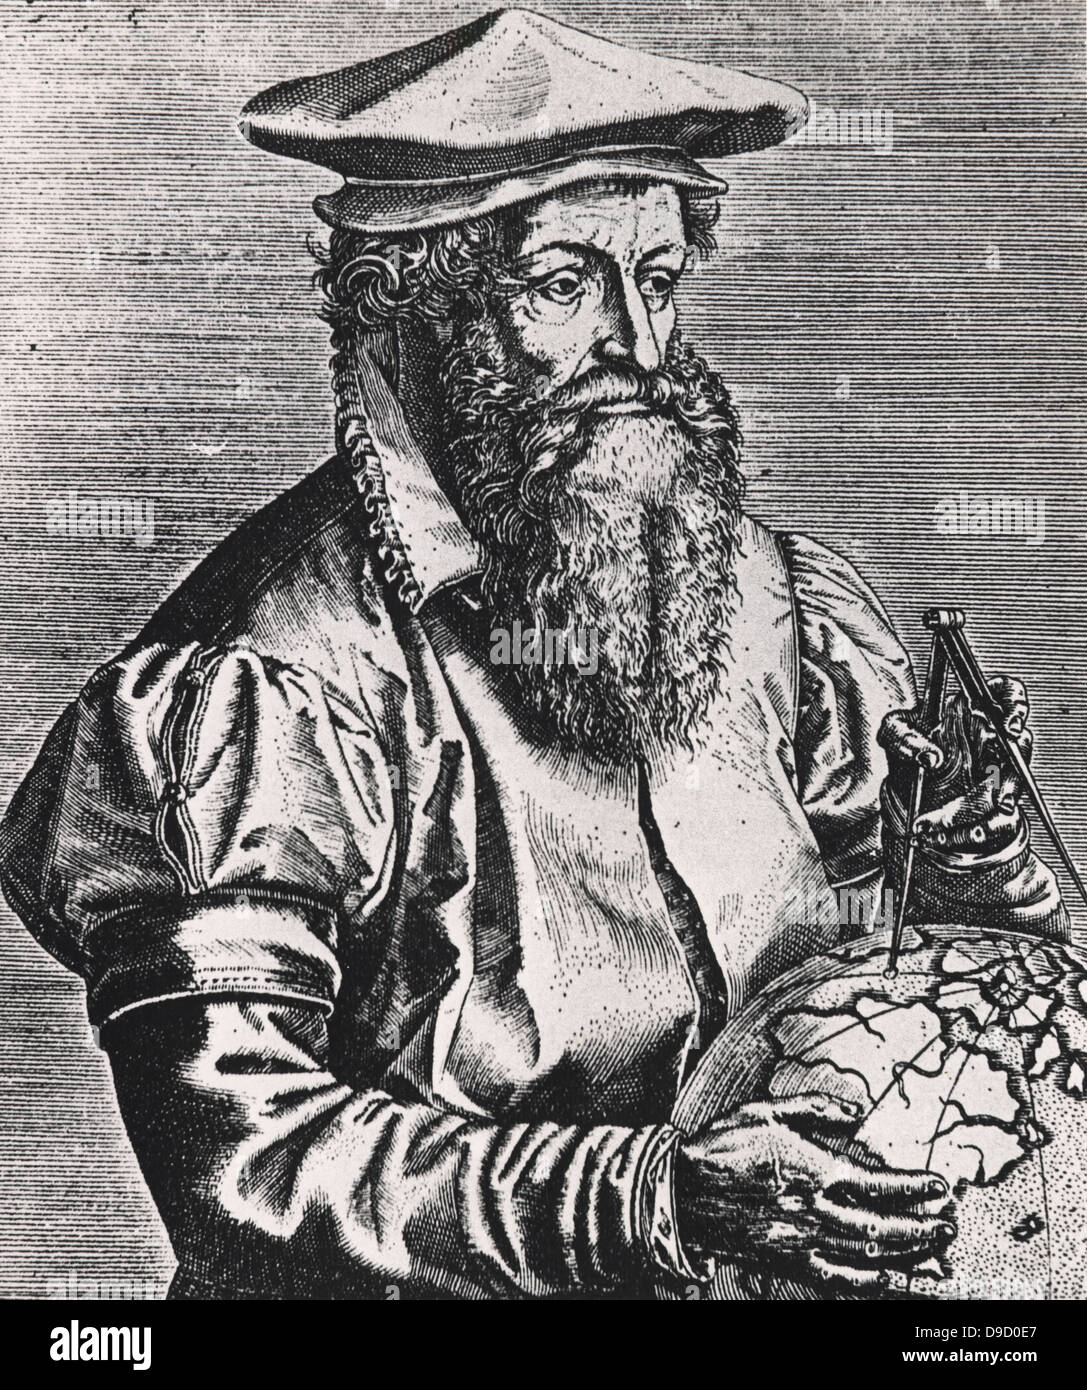 Gerhardus Mercator, geboren Gerhard Kremer (1512-1594) Flämische Map Maker und Geograph. Erfinder der Mercator-projektion. Von imaginiert doctorum vivorum.... Antwerpen, 1587, von Philippe Galle. Stockfoto